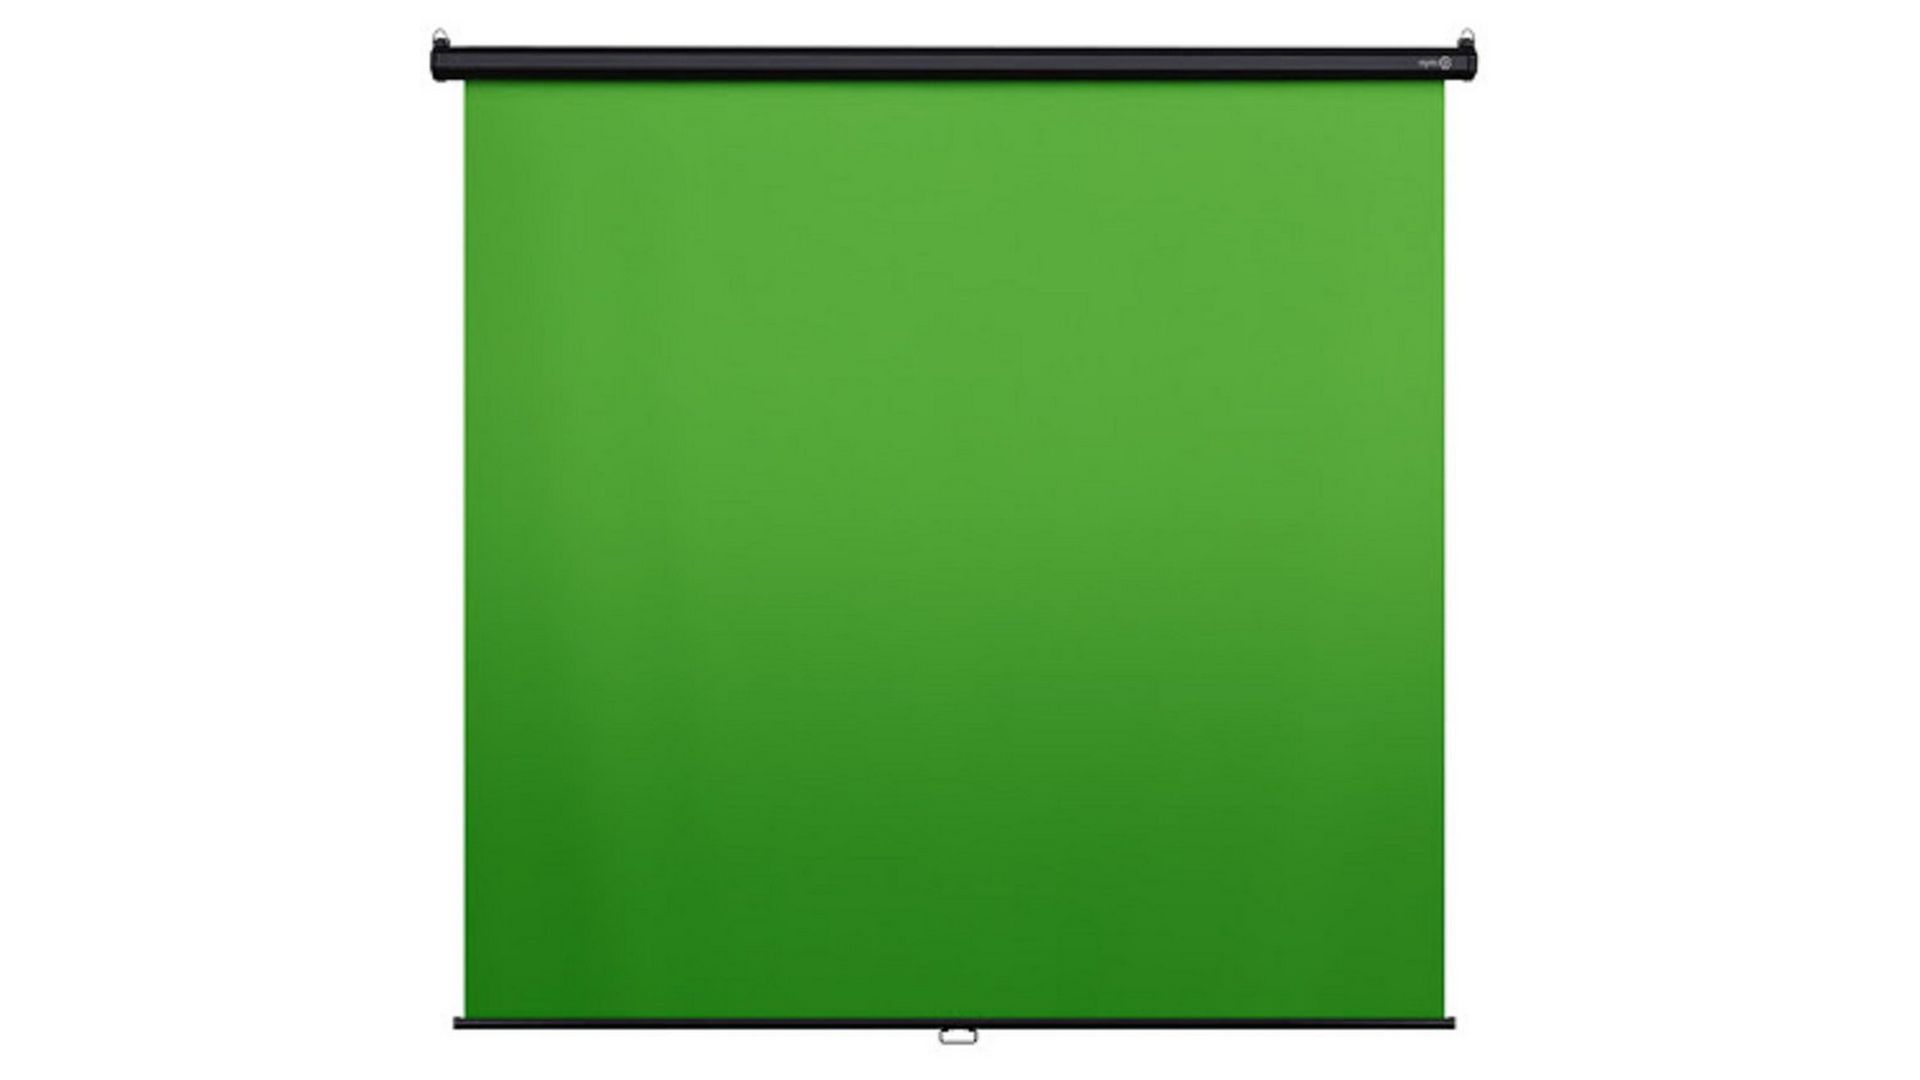 Phông xanh Elgato Green Screen MT